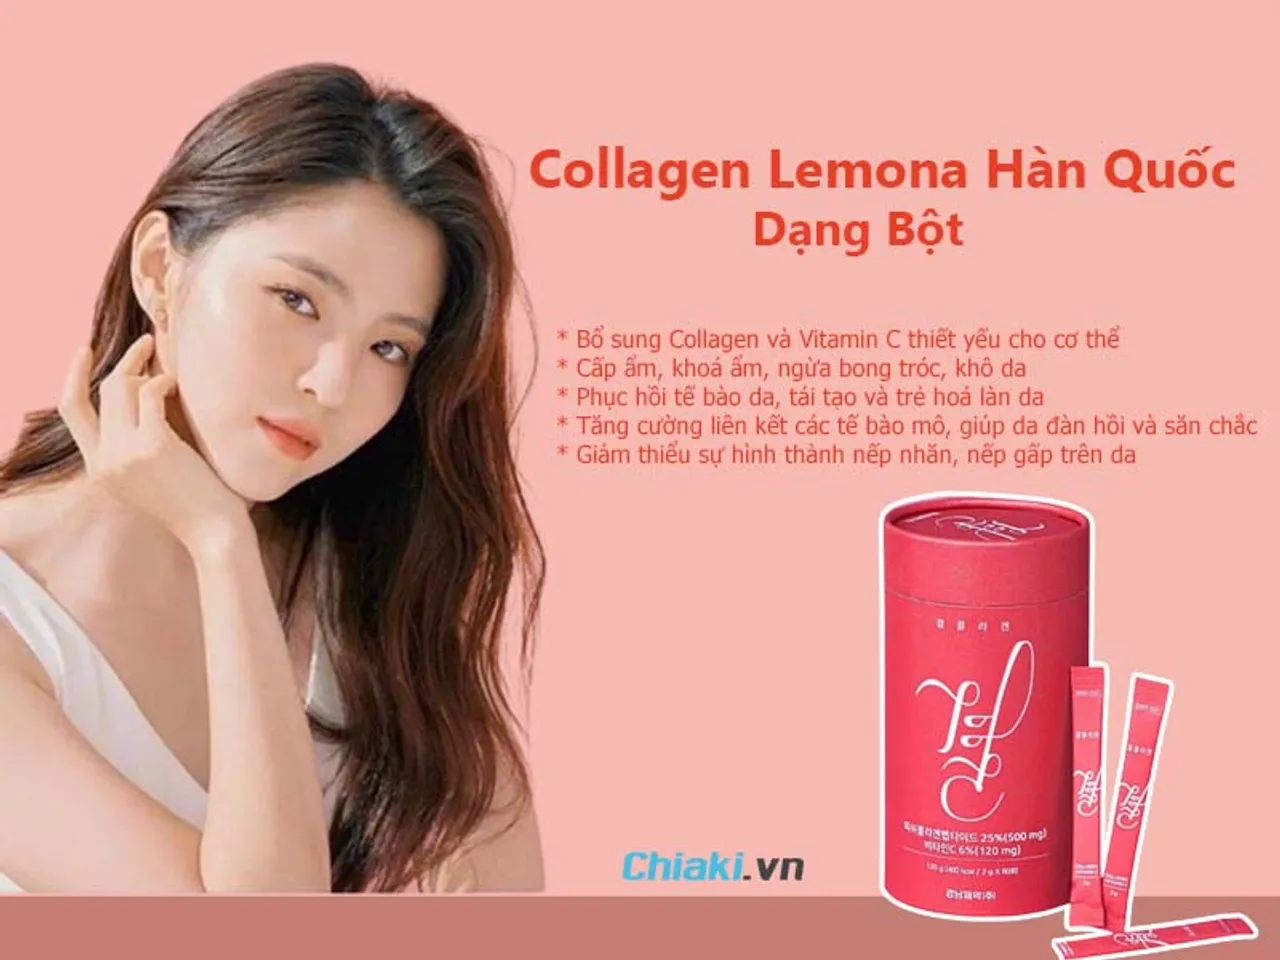 Công dụng của Collagen Lemona Hàn Quốc dạng bột